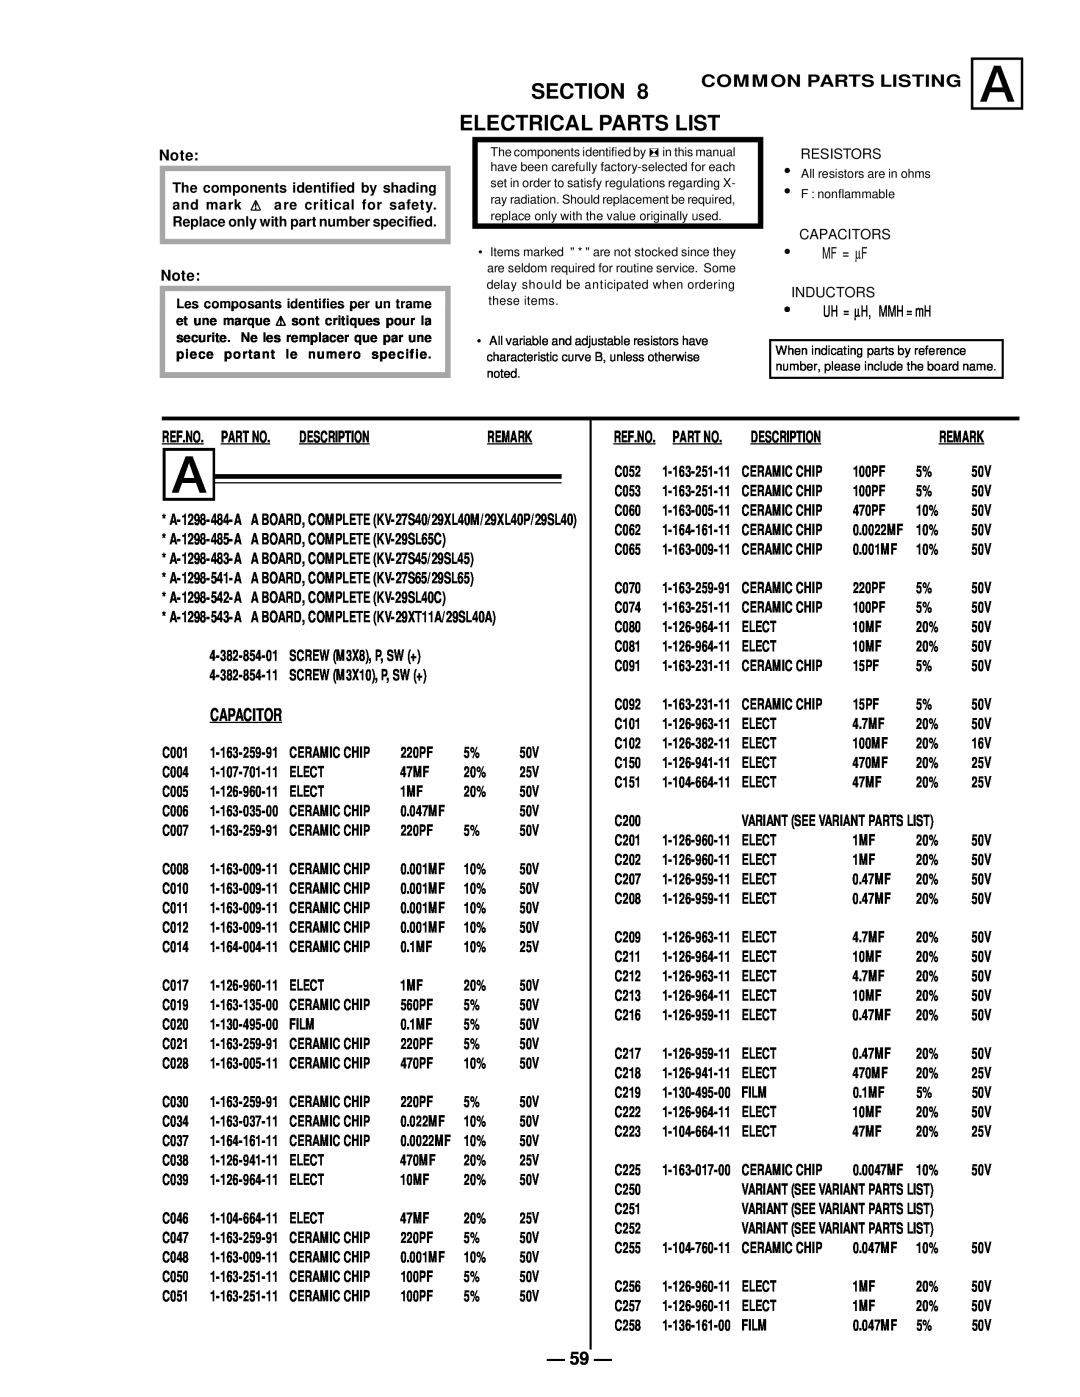 Sony KV-27S40, KV-29SL40C, KV-27S45 Section, Electrical Parts List, Common Parts Listing A, Ref.No. Part No, Description 